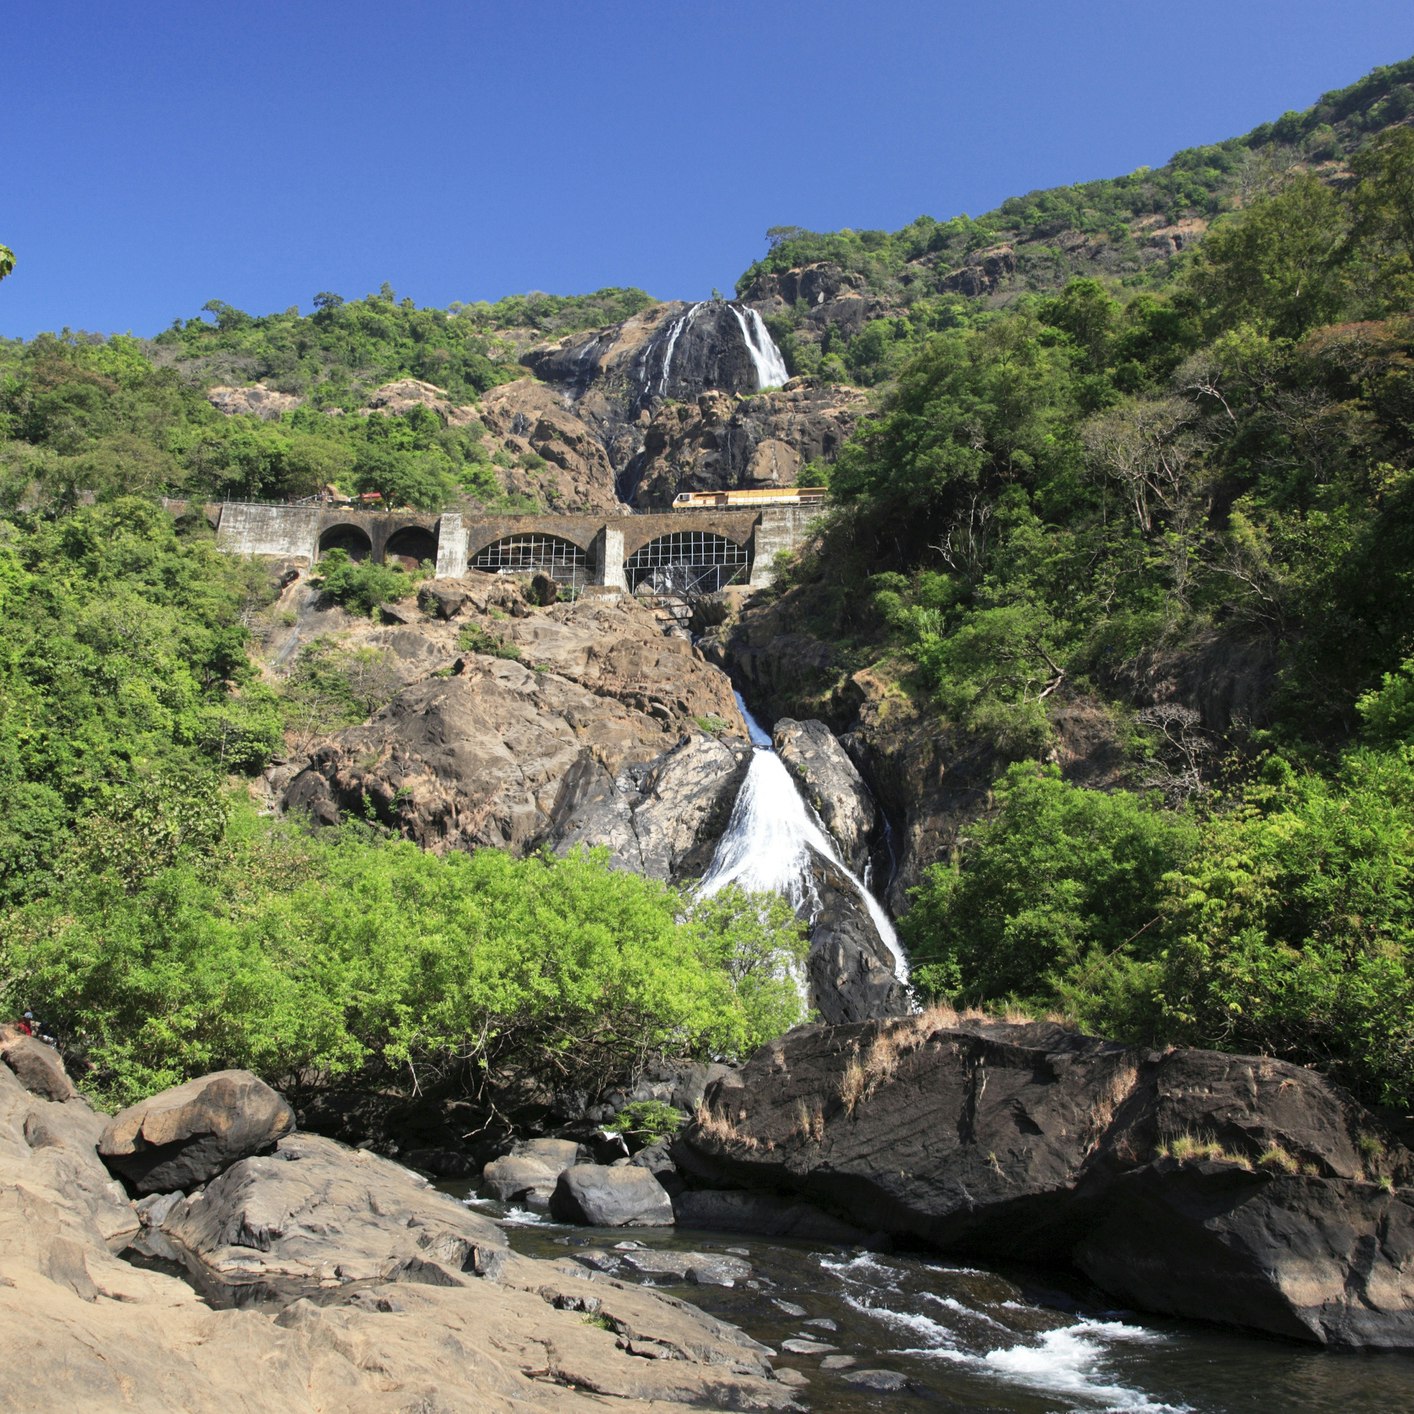 Travel News - Dudhsagar Falls, Goa, India